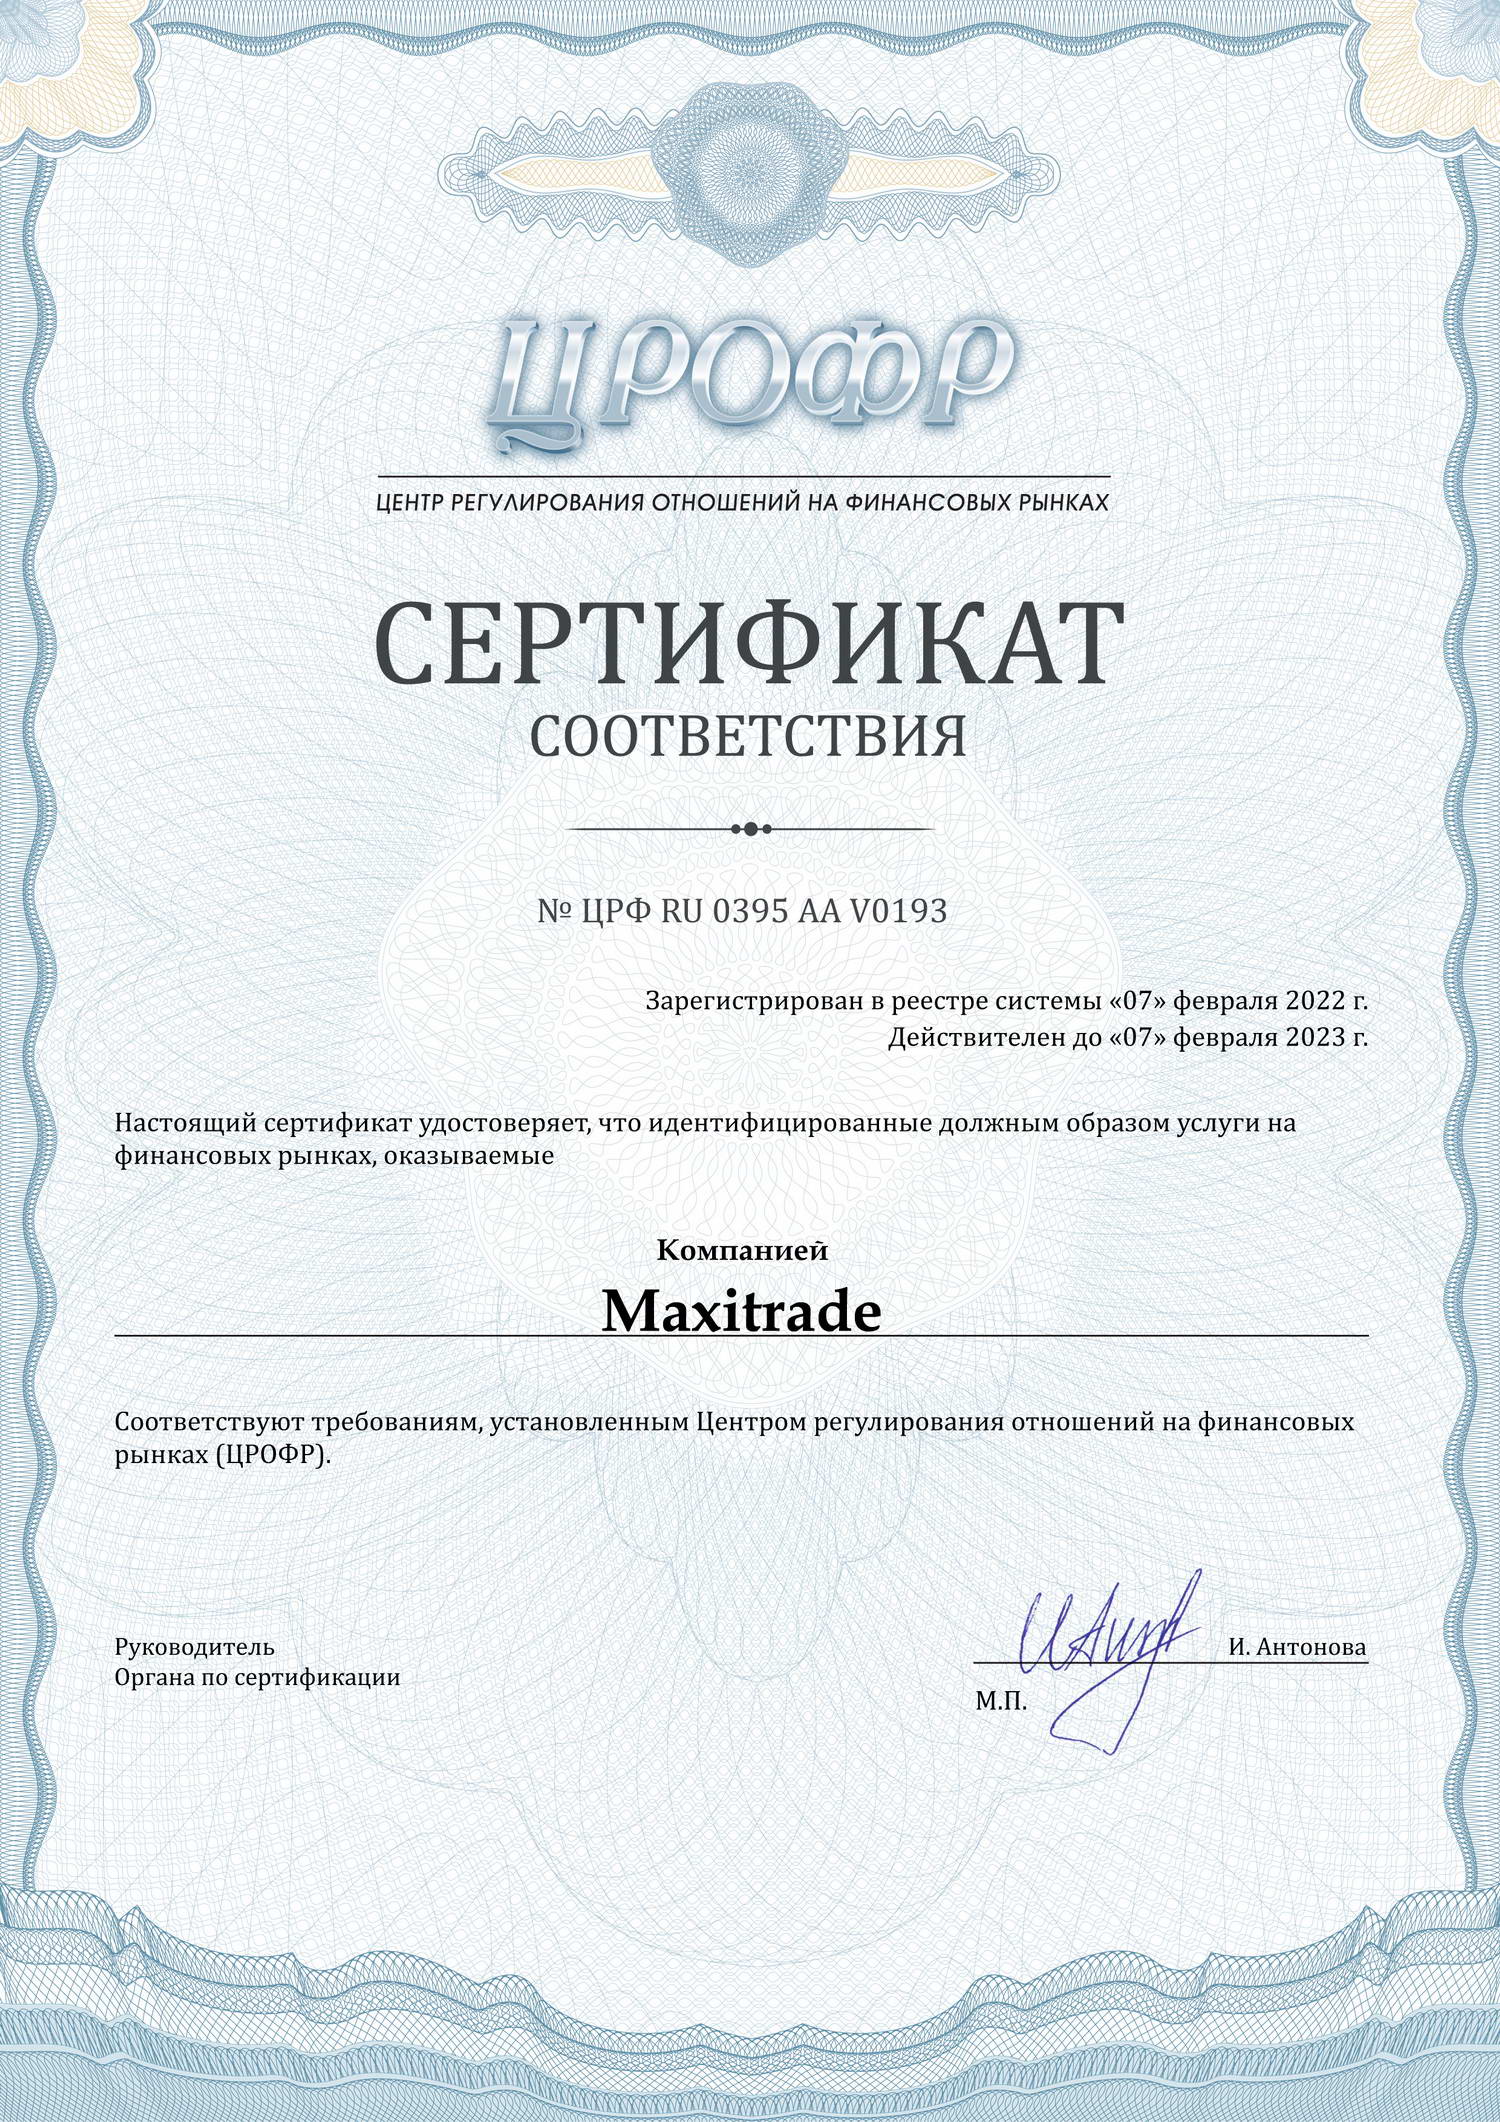 Сертификаты ЦРОФР